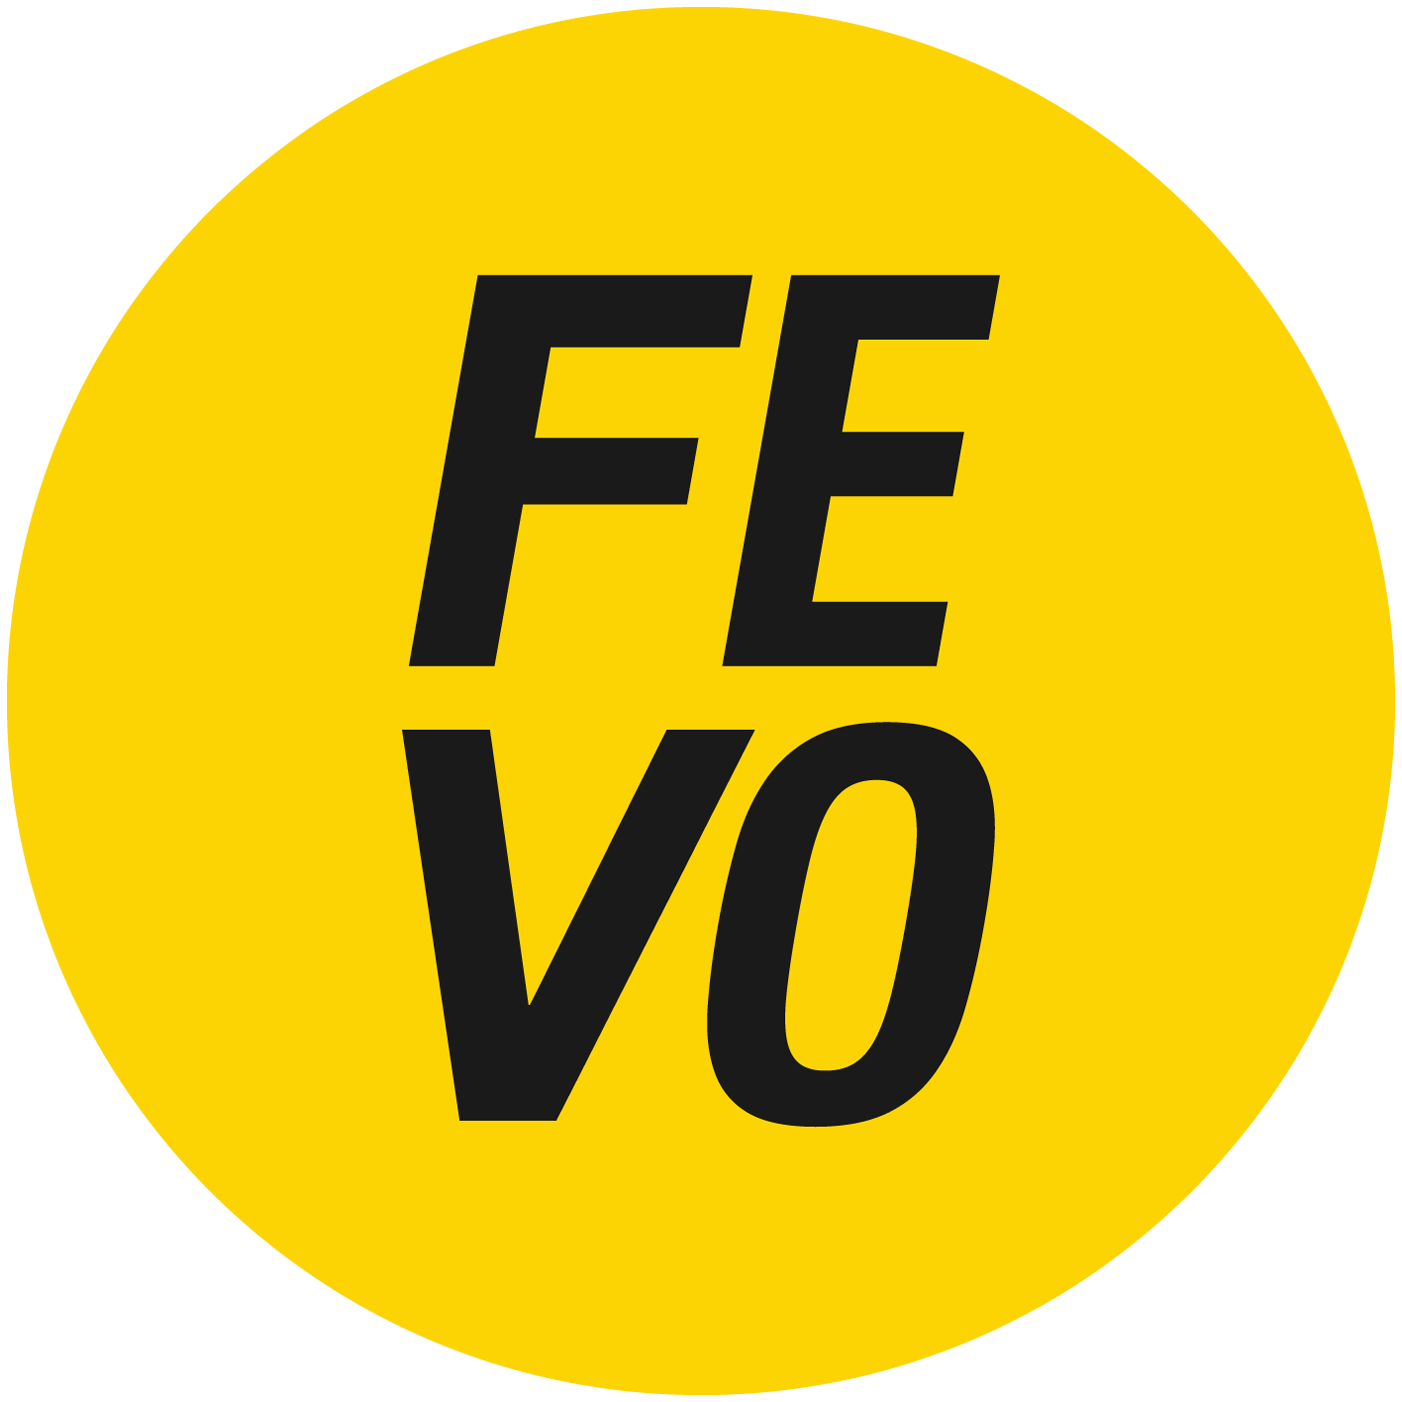 FEVO Logo